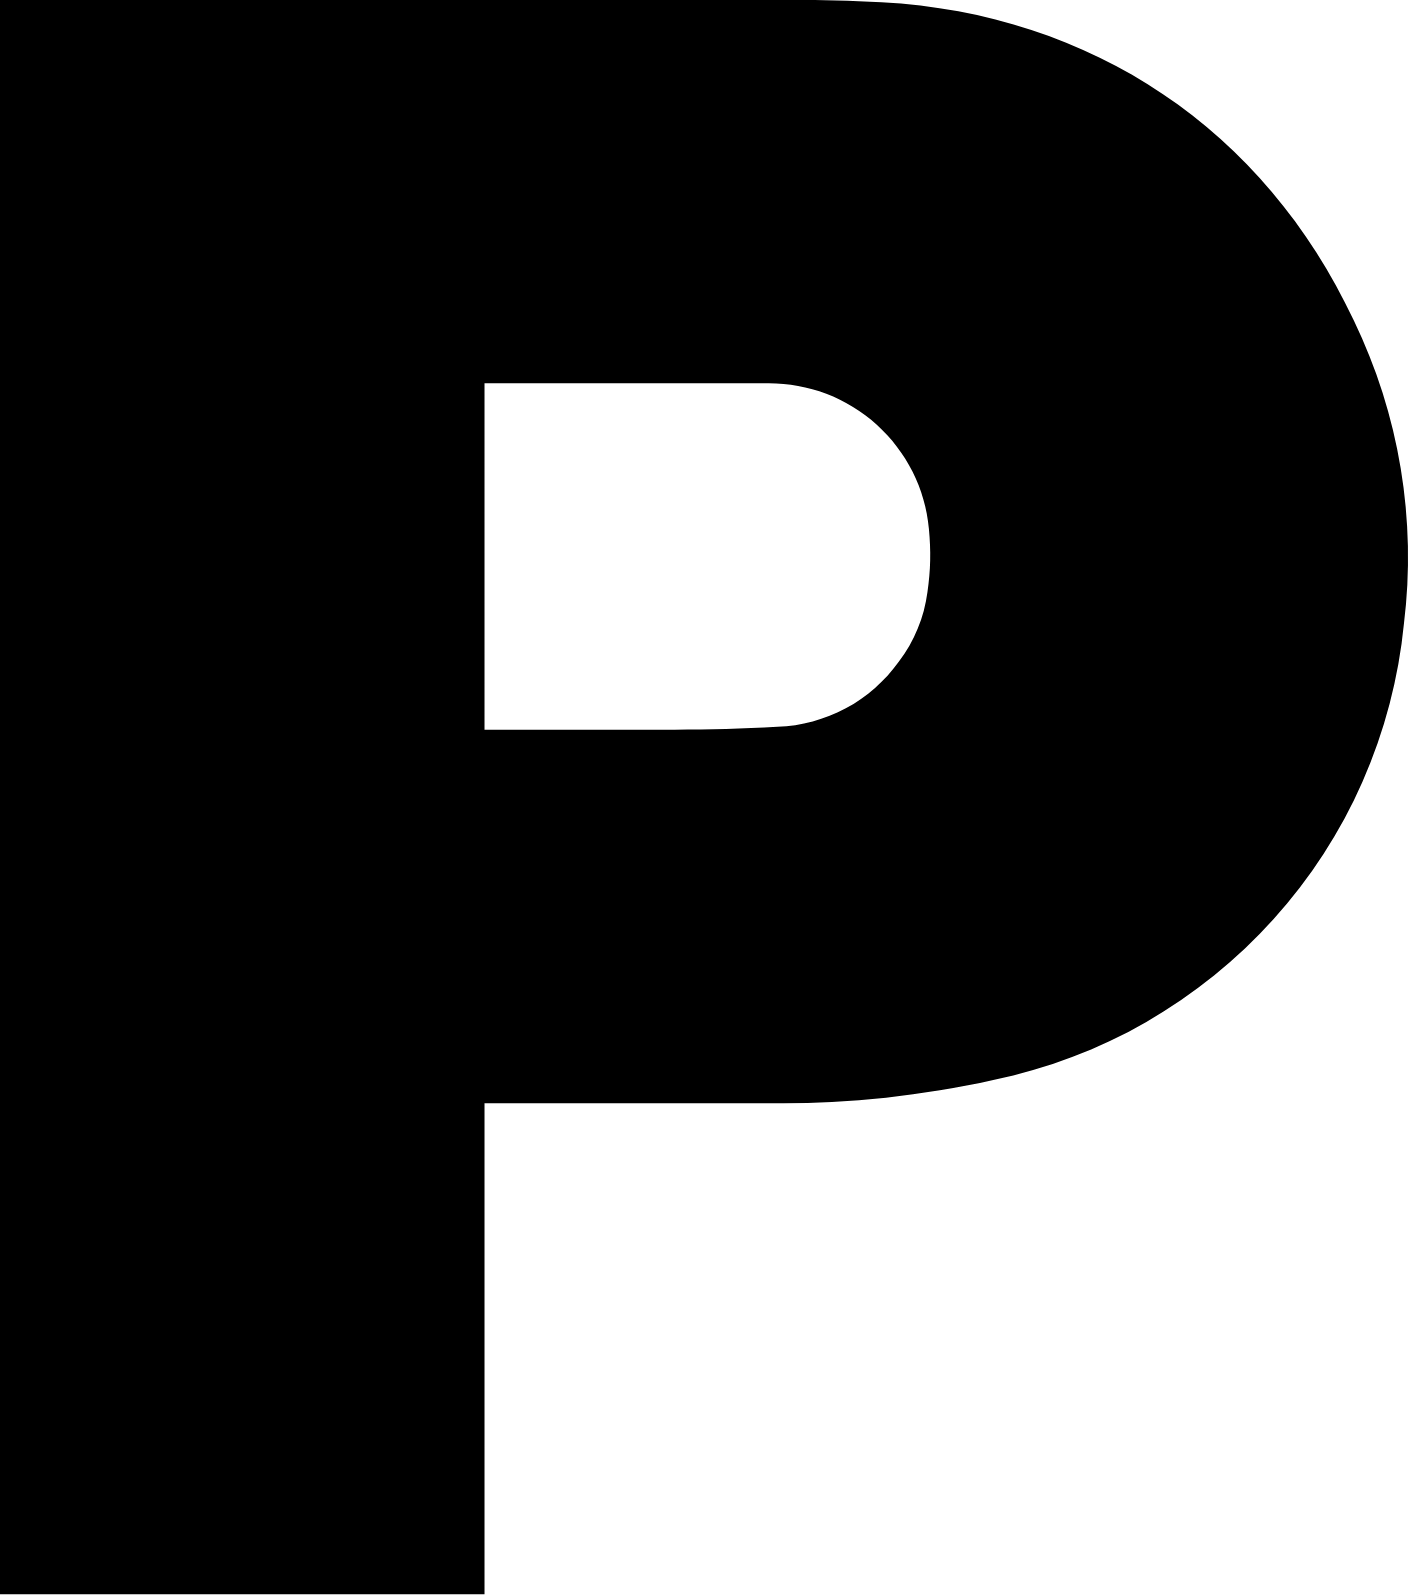 Panasonic logo (transparent PNG)